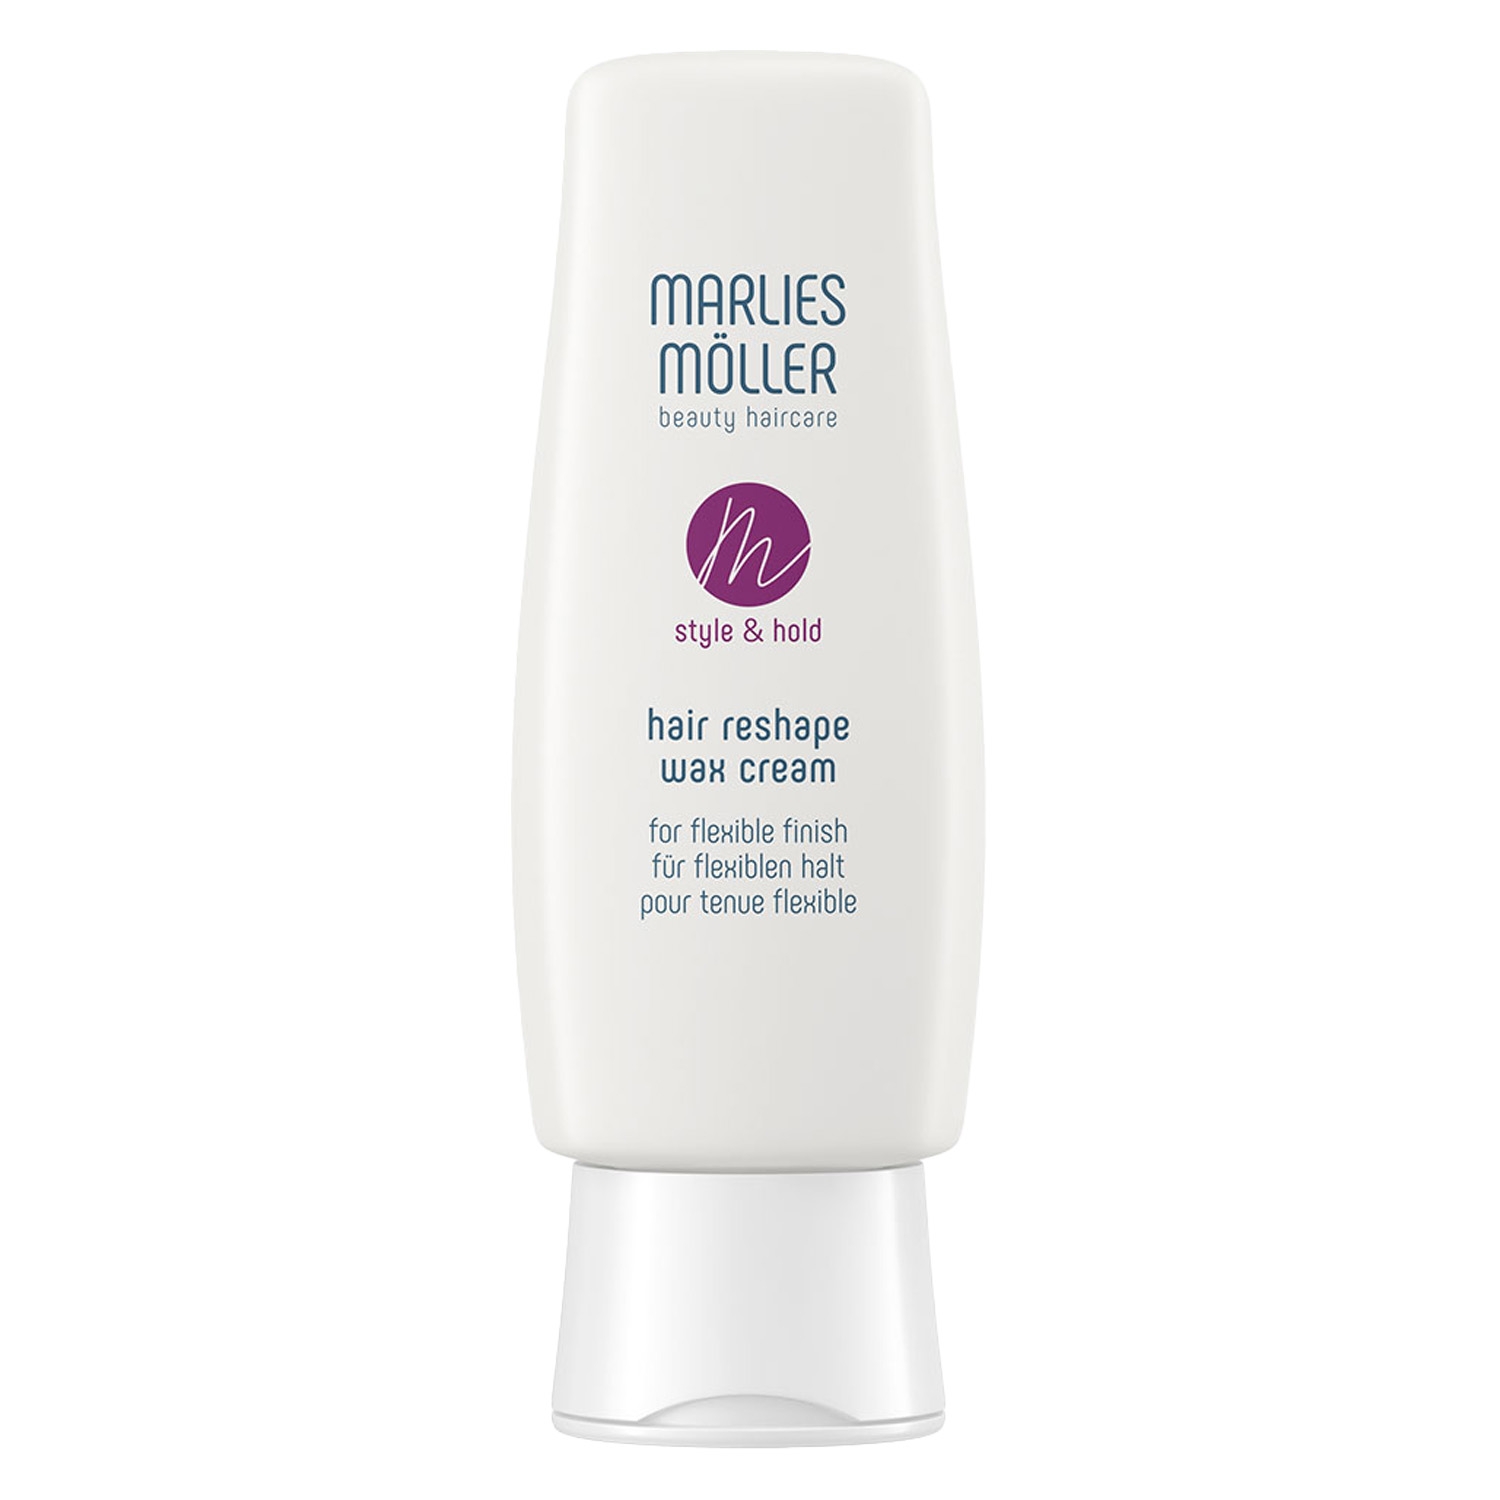 Produktbild von MM Style & Hold - Hair Reshape Flexible Wax Cream